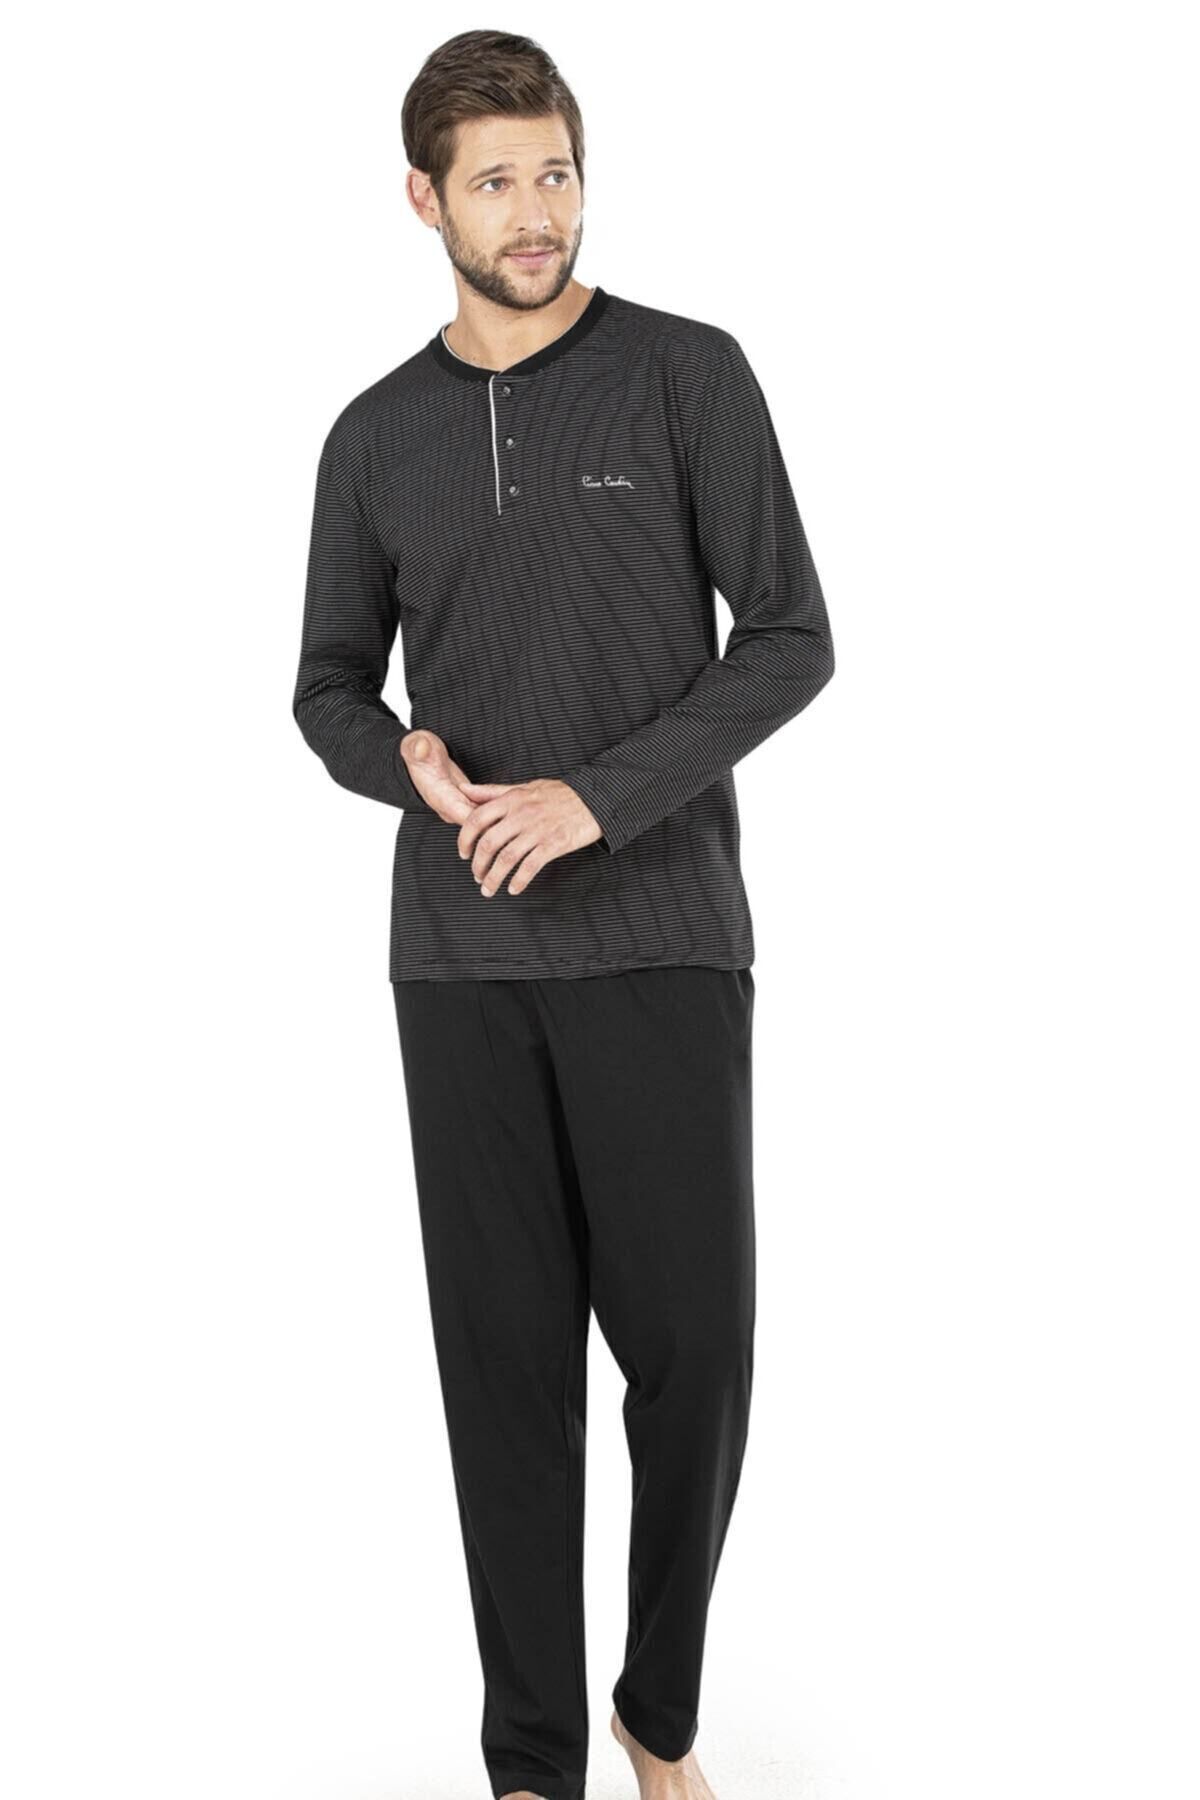 Pierre Cardin Siyah Renk Çizgili Uzun Kollu Erkek Pijama Takımı